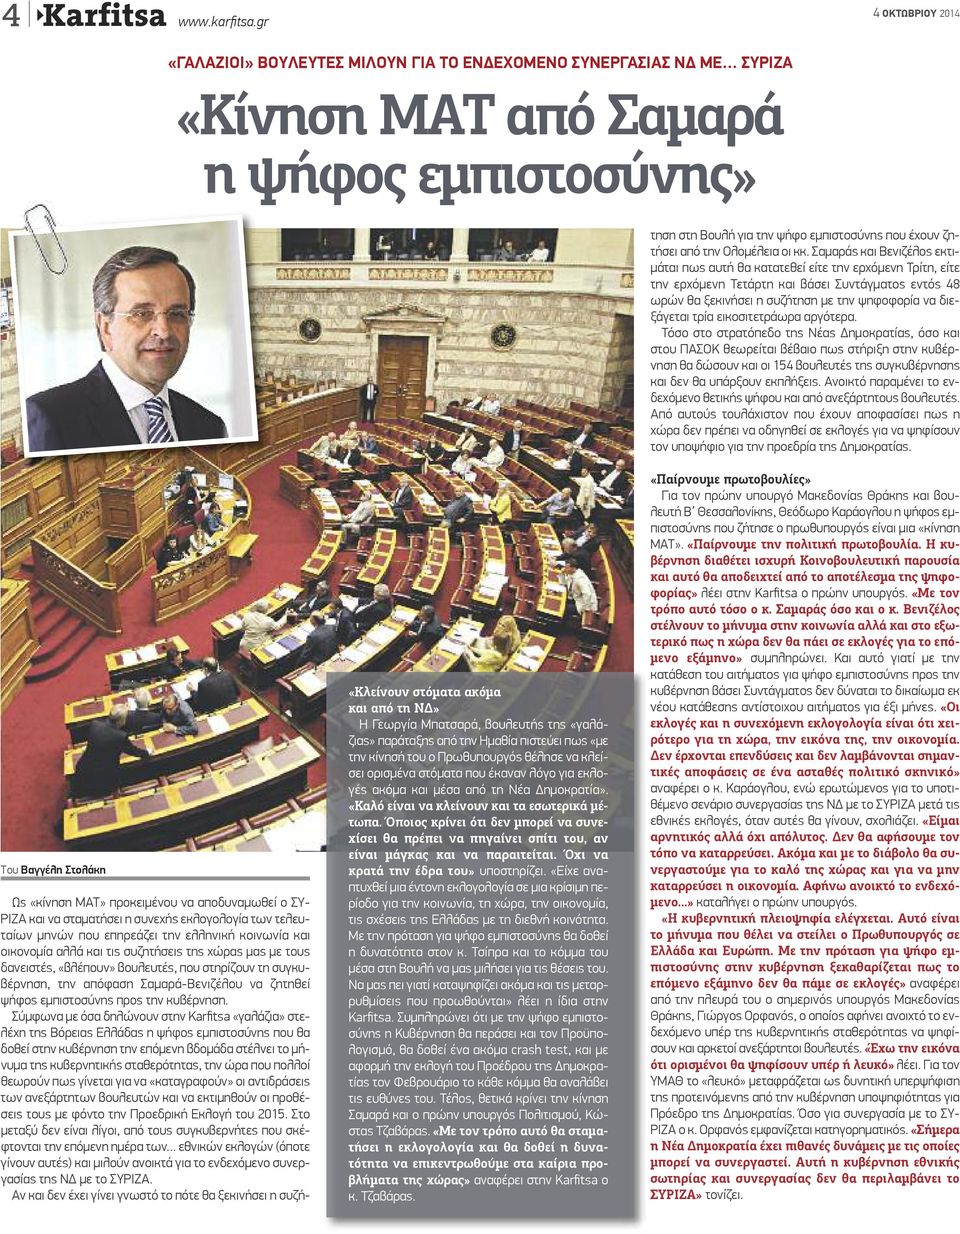 συνεχής εκλογολογία των τελευταίων μηνών που επηρεάζει την ελληνική κοινωνία και οικονομία αλλά και τις συζητήσεις της χώρας μας με τους δανειστές, «βλέπουν» βουλευτές, που στηρίζουν τη συγκυβέρνηση,